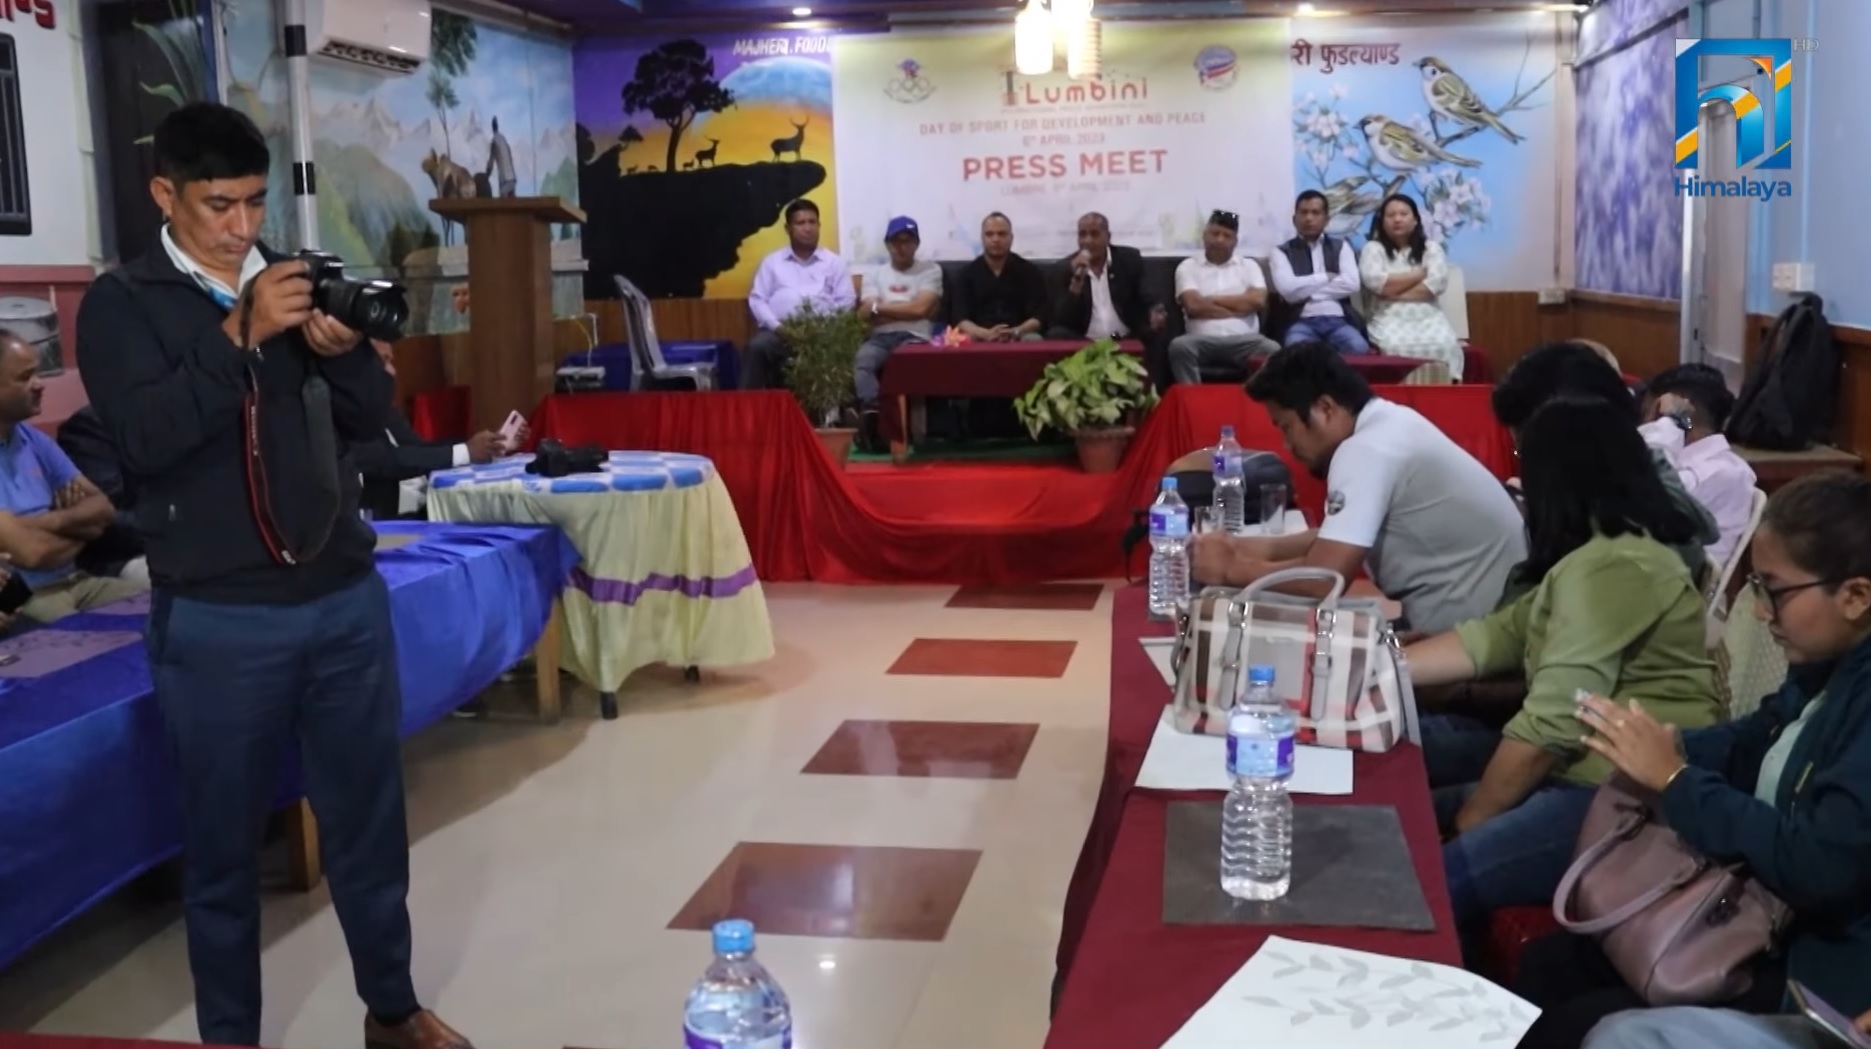 अन्तर्राष्ट्रिय विकास र शान्तिका लागि लुम्बिनीमा पीस म्याराथन (भिडियो रिपोर्टसहित)